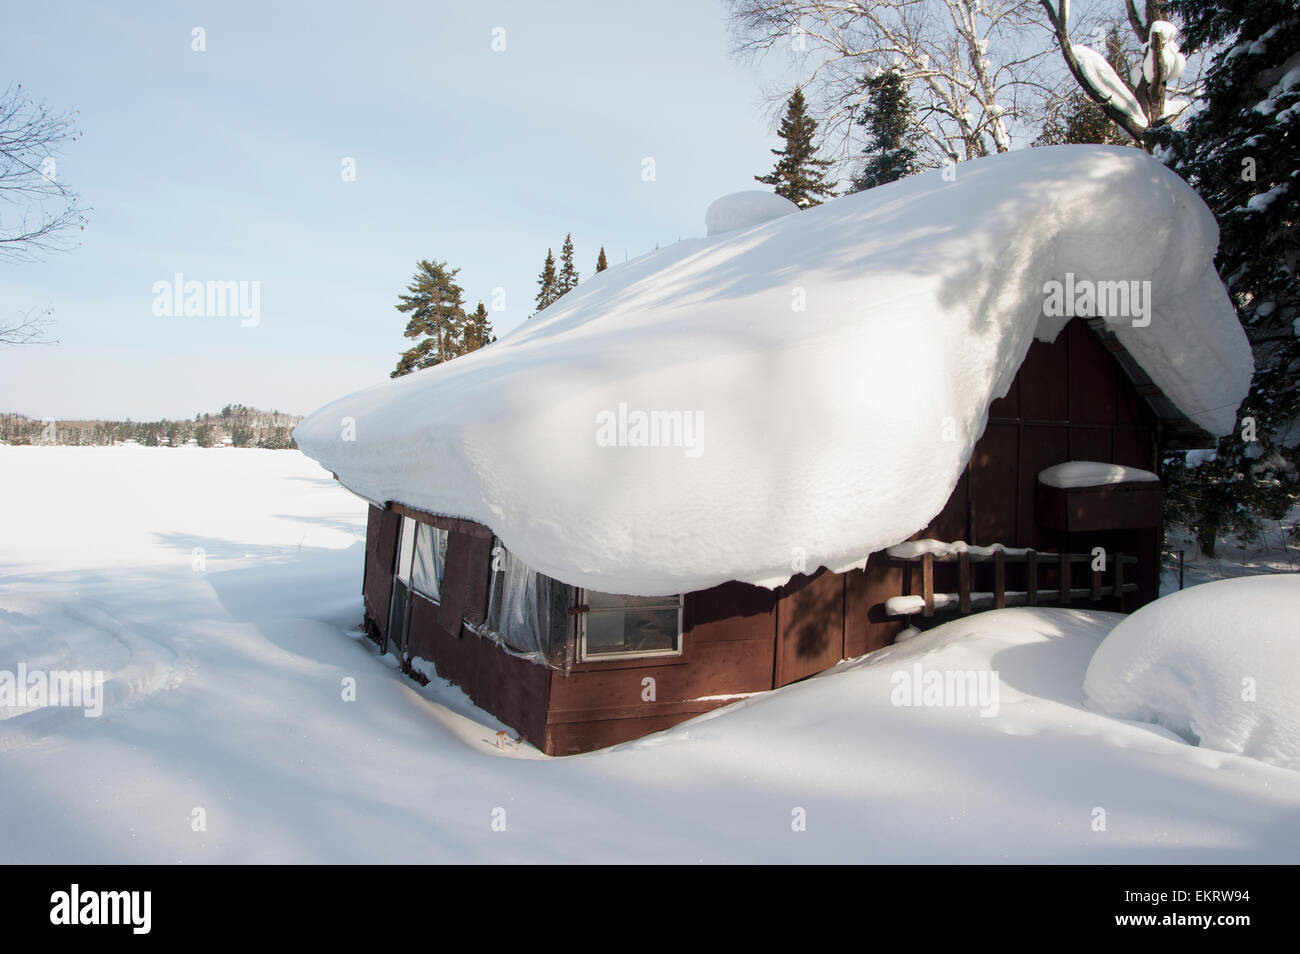 Wildniscamp mit Schnee im Winter in der Nähe von einem zugefrorenen See bedeckt; Ontario, Kanada Stockfoto